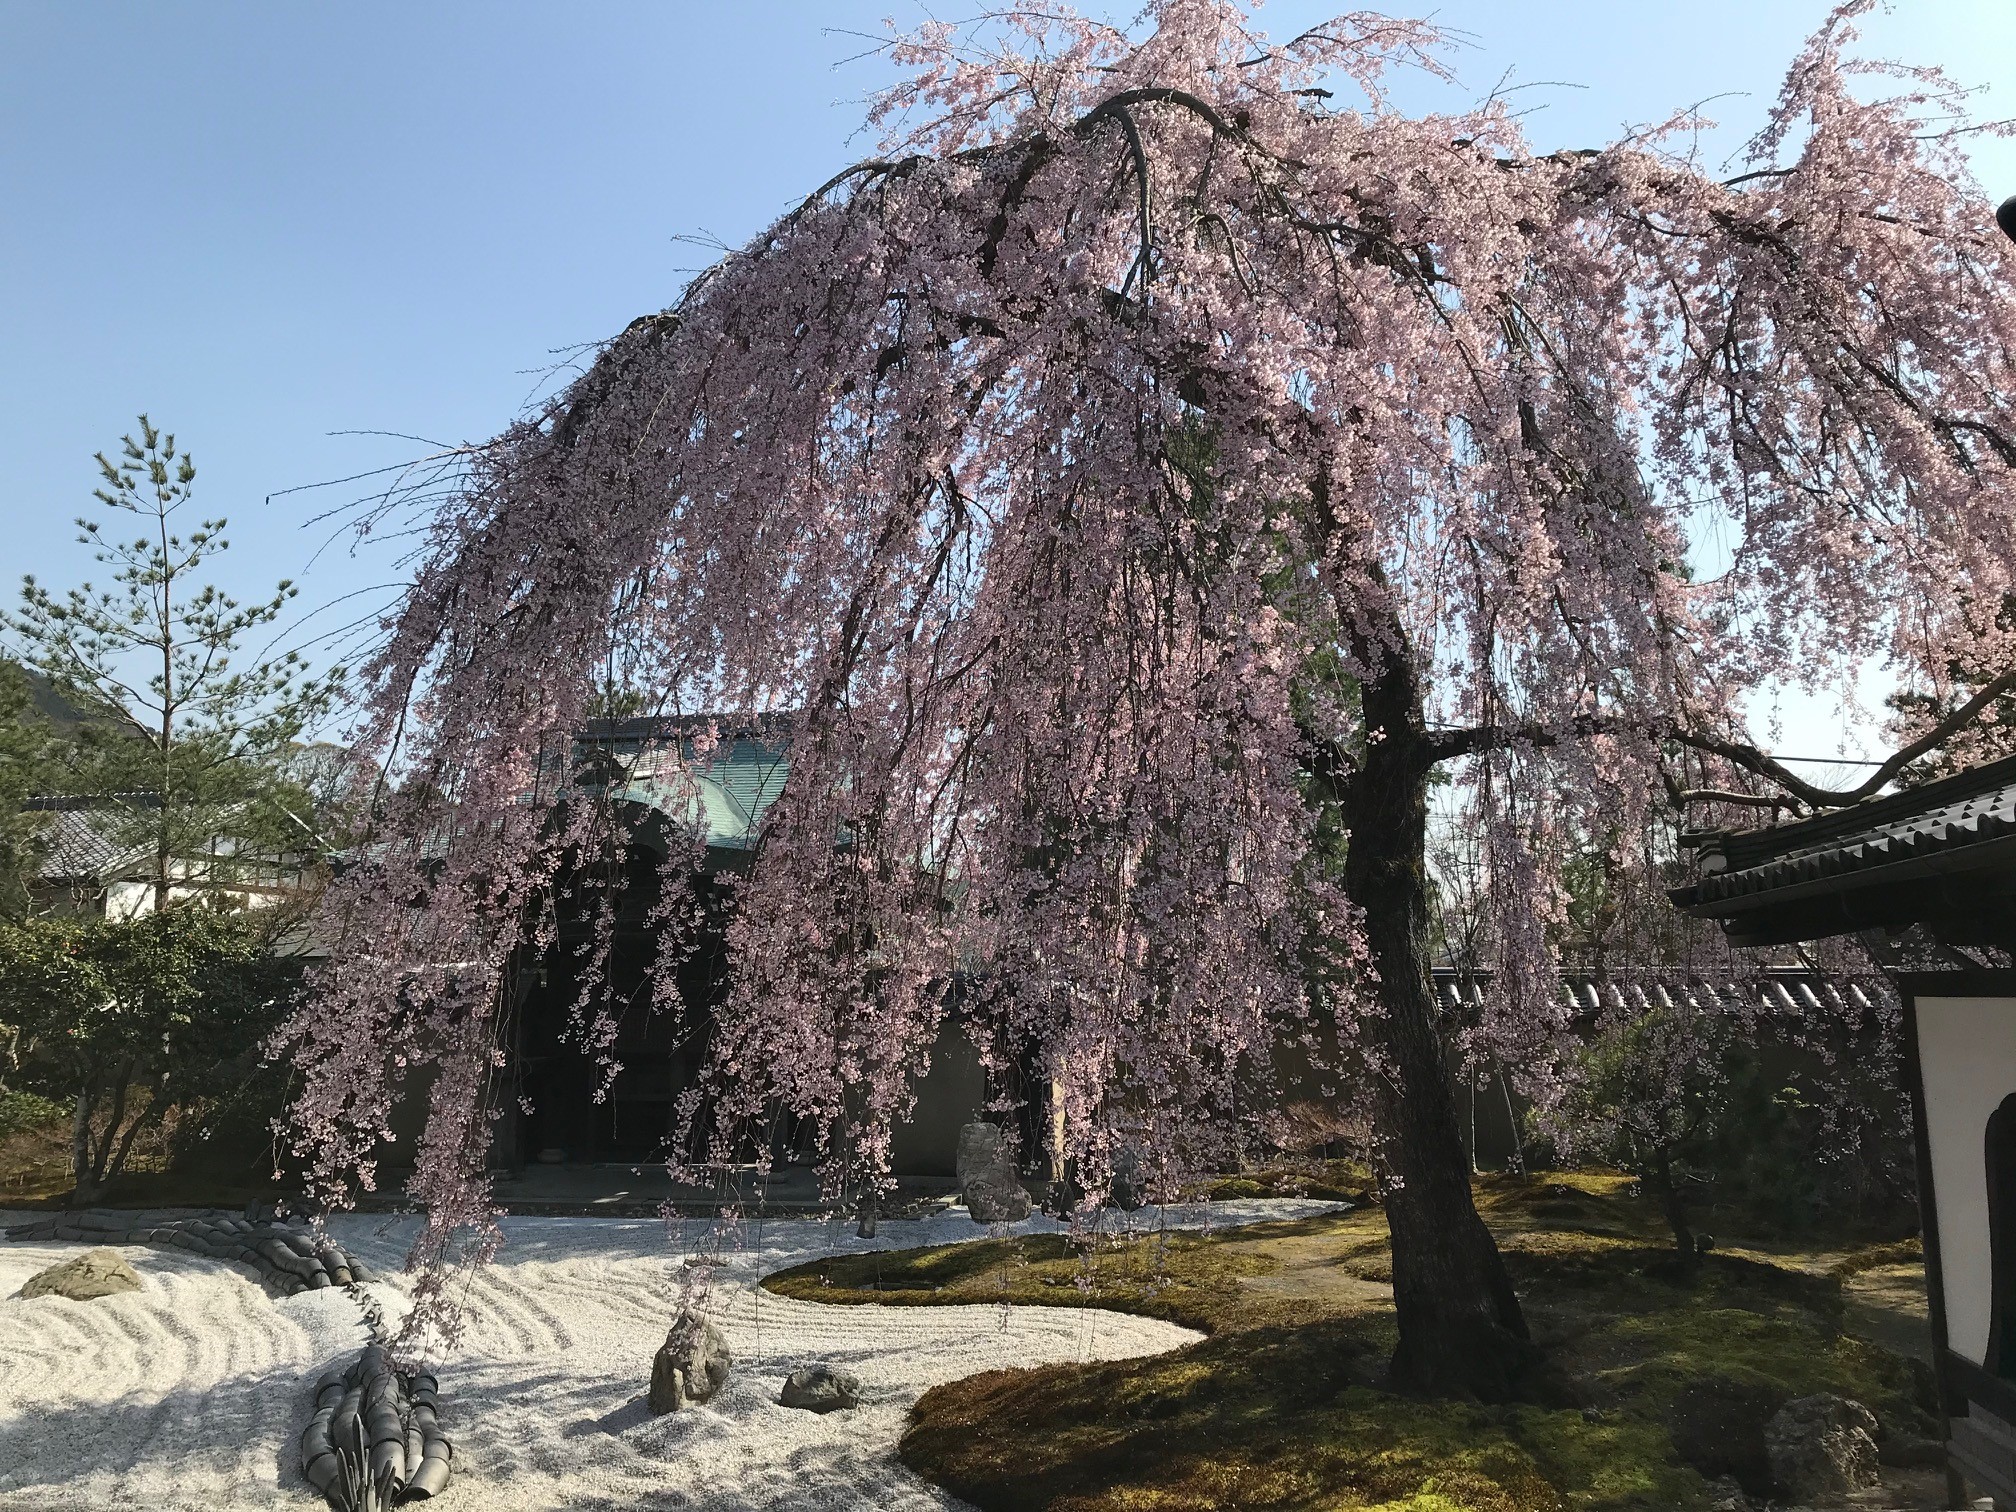 高台寺のしだれ桜と円山公園の祇園しだれが21年は既に満開に 京都はんなりずむ